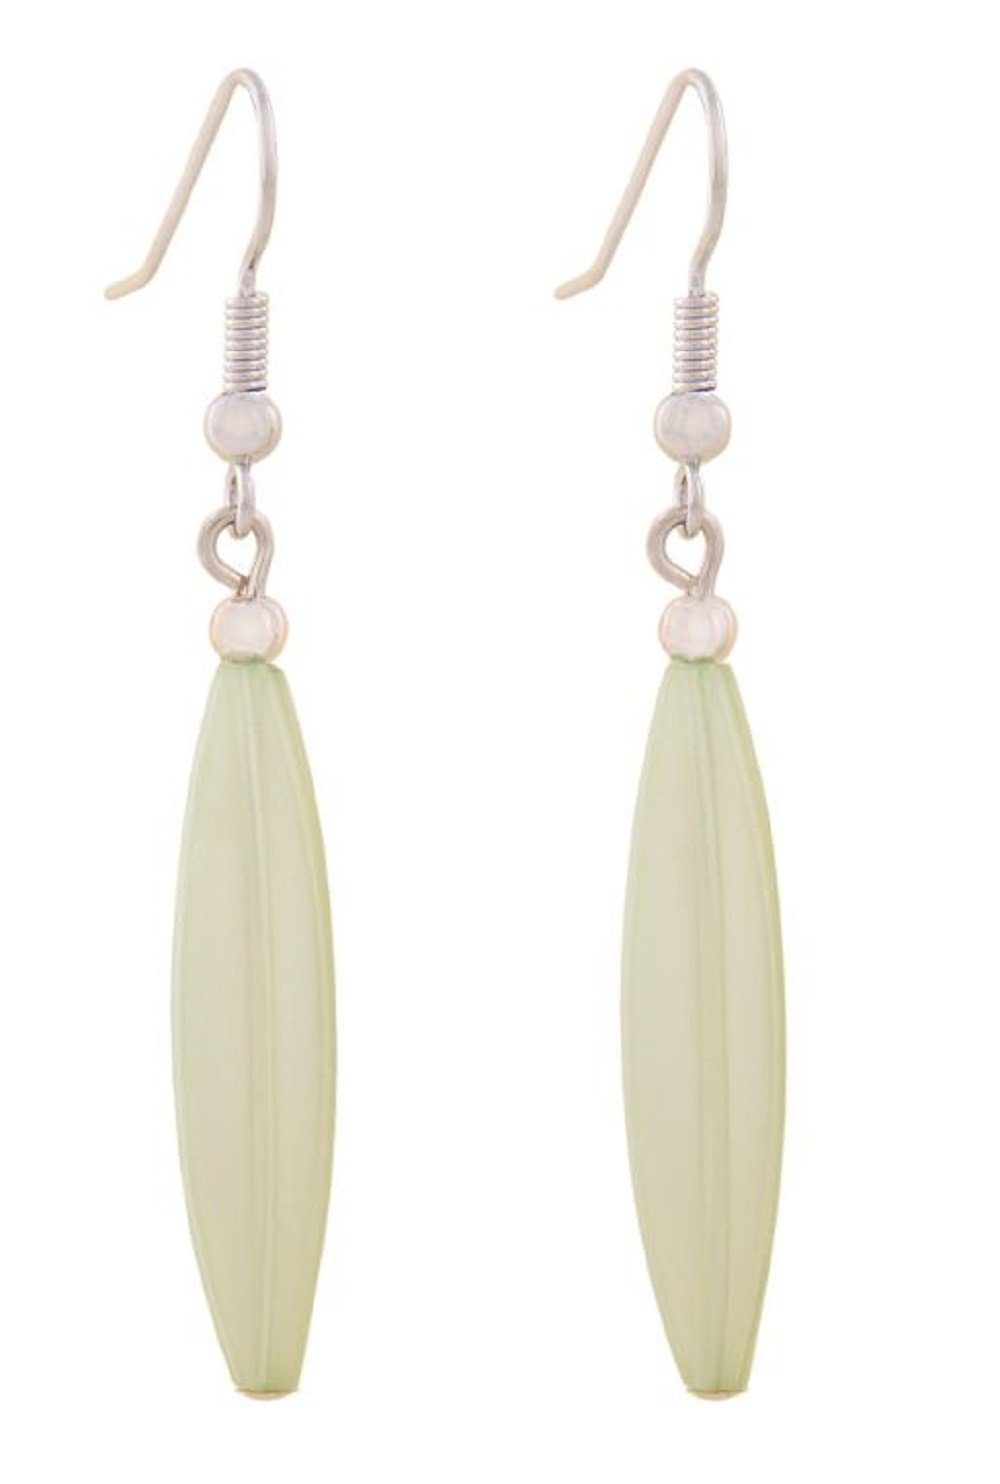 unbespielt Paar Ohrhänger Ohrhaken Rillenolive Kunststoff hellgrün-wachsfarben 30 x 9 mm, Modeschmuck für Damen